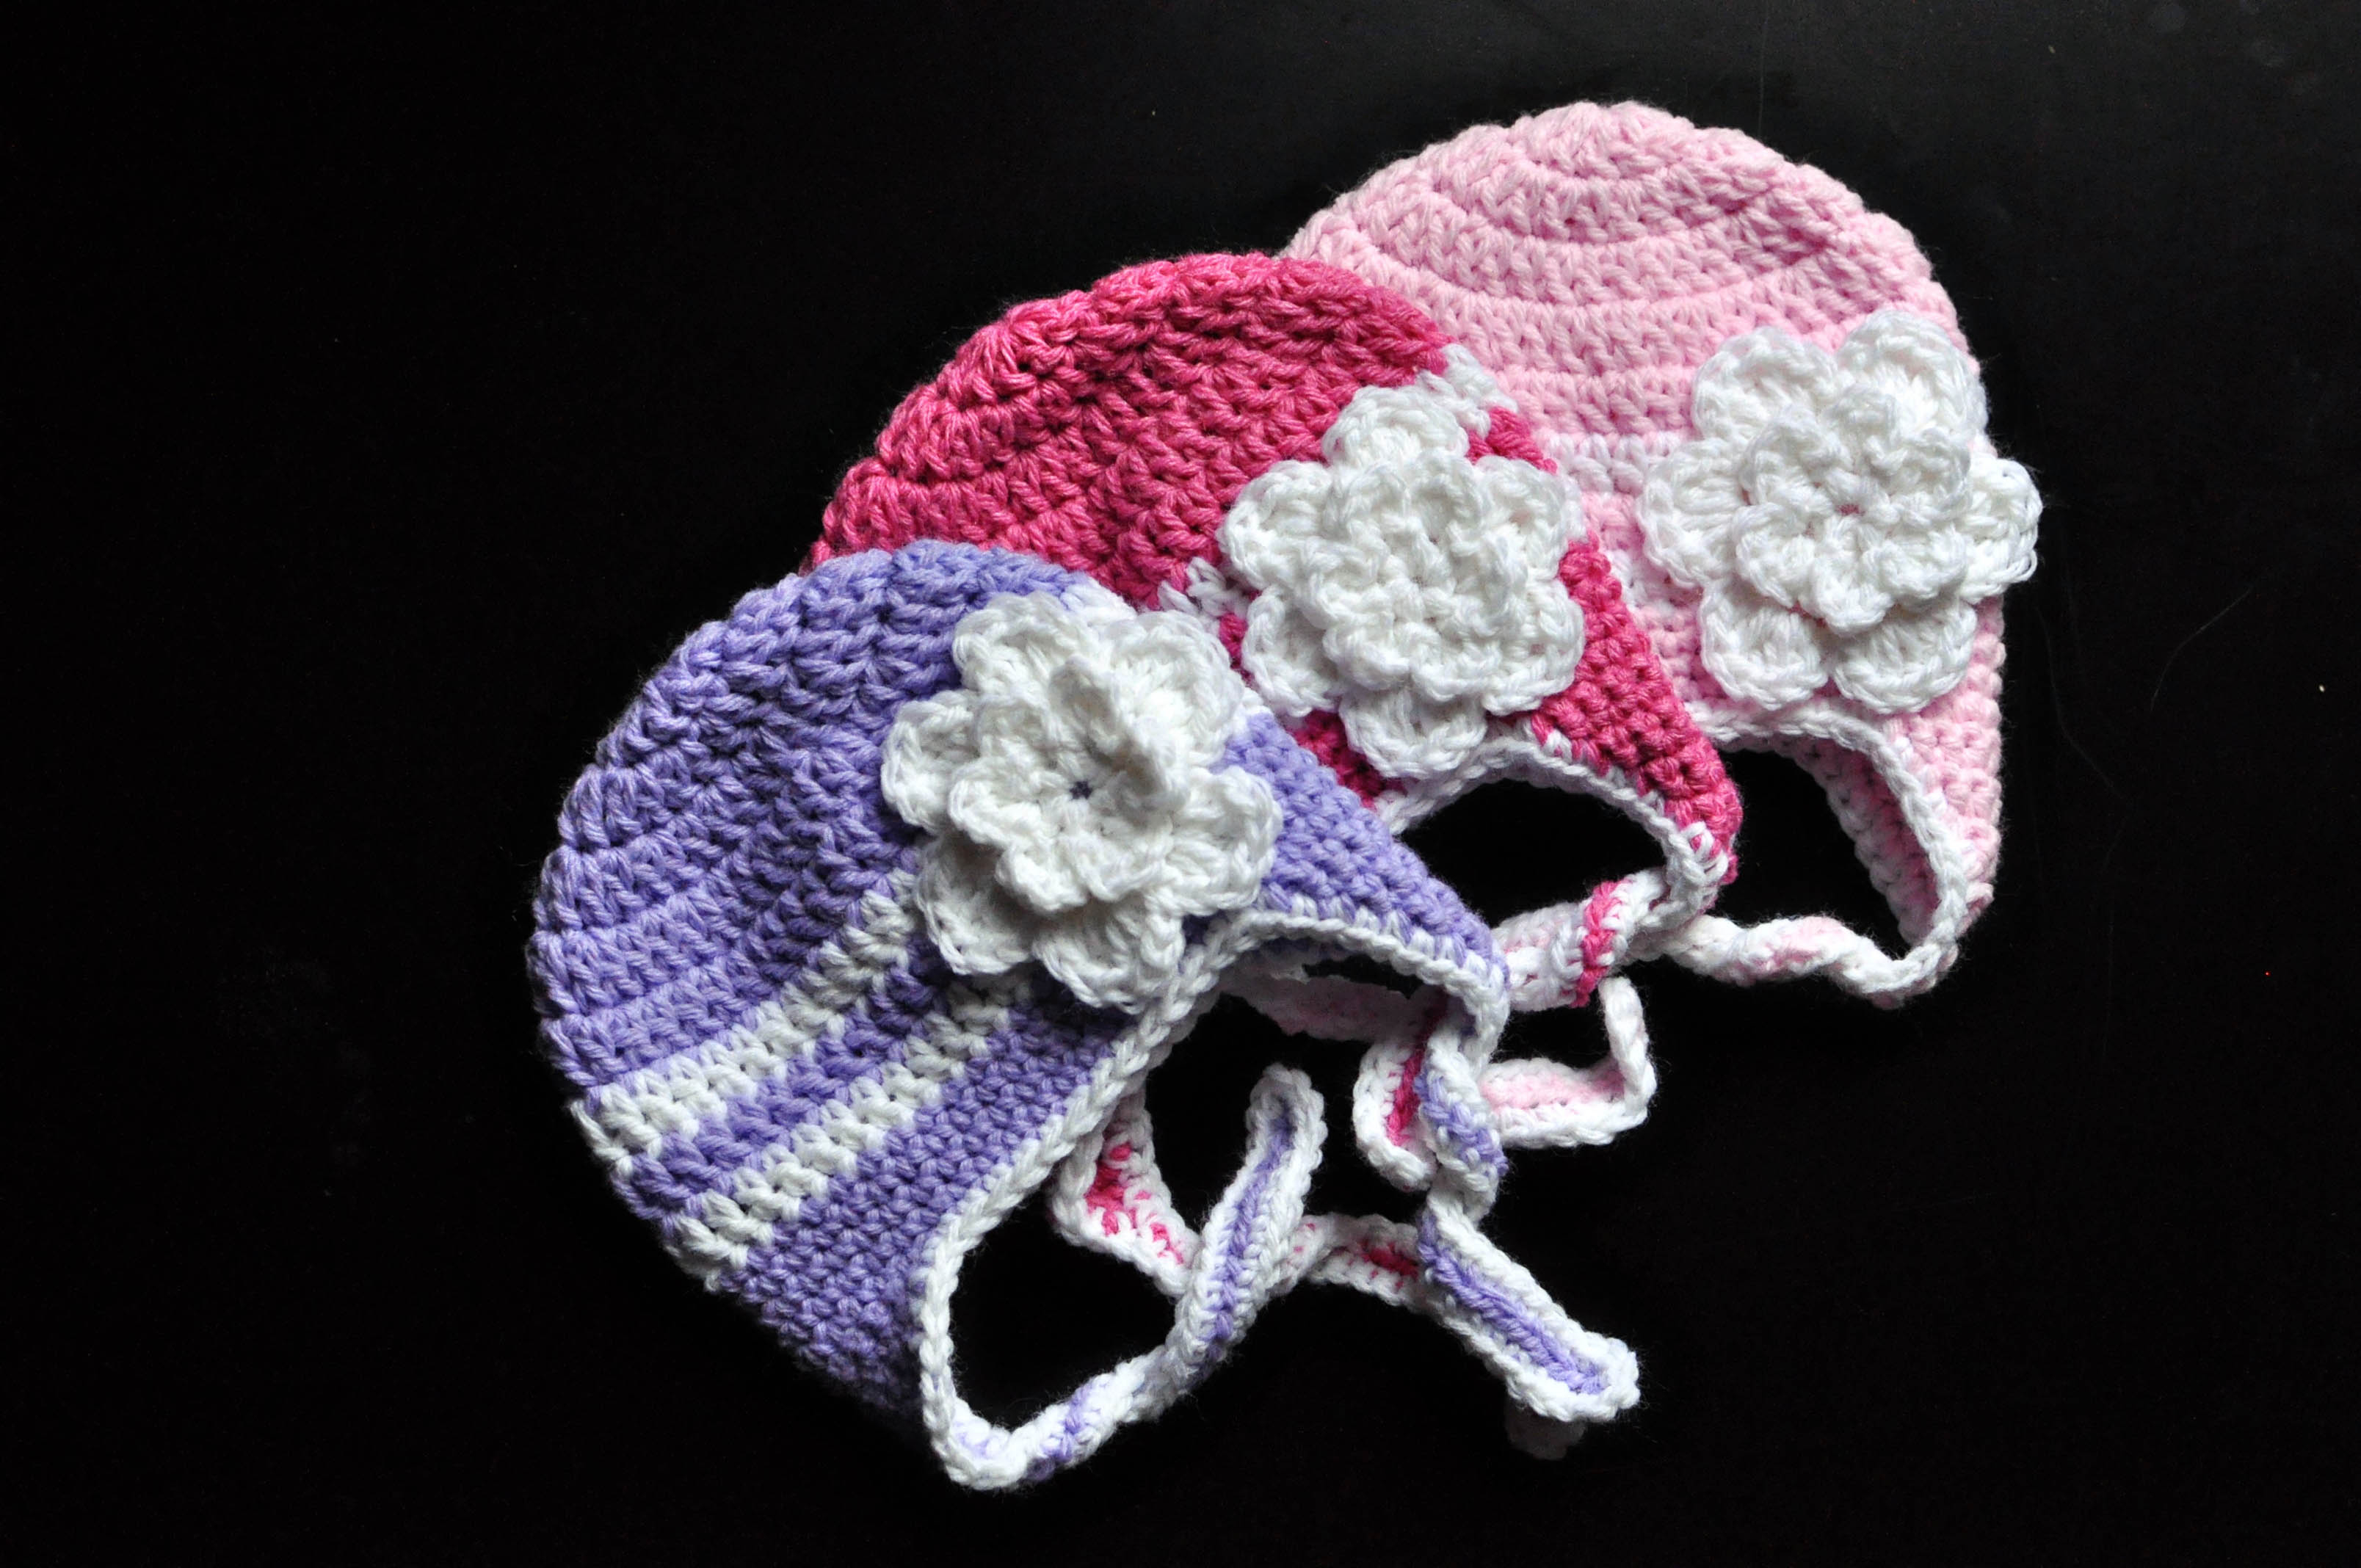 Crochet Hat With Ears Pattern Free Crochet Pattern Striped Earflap Hat Classy Crochet